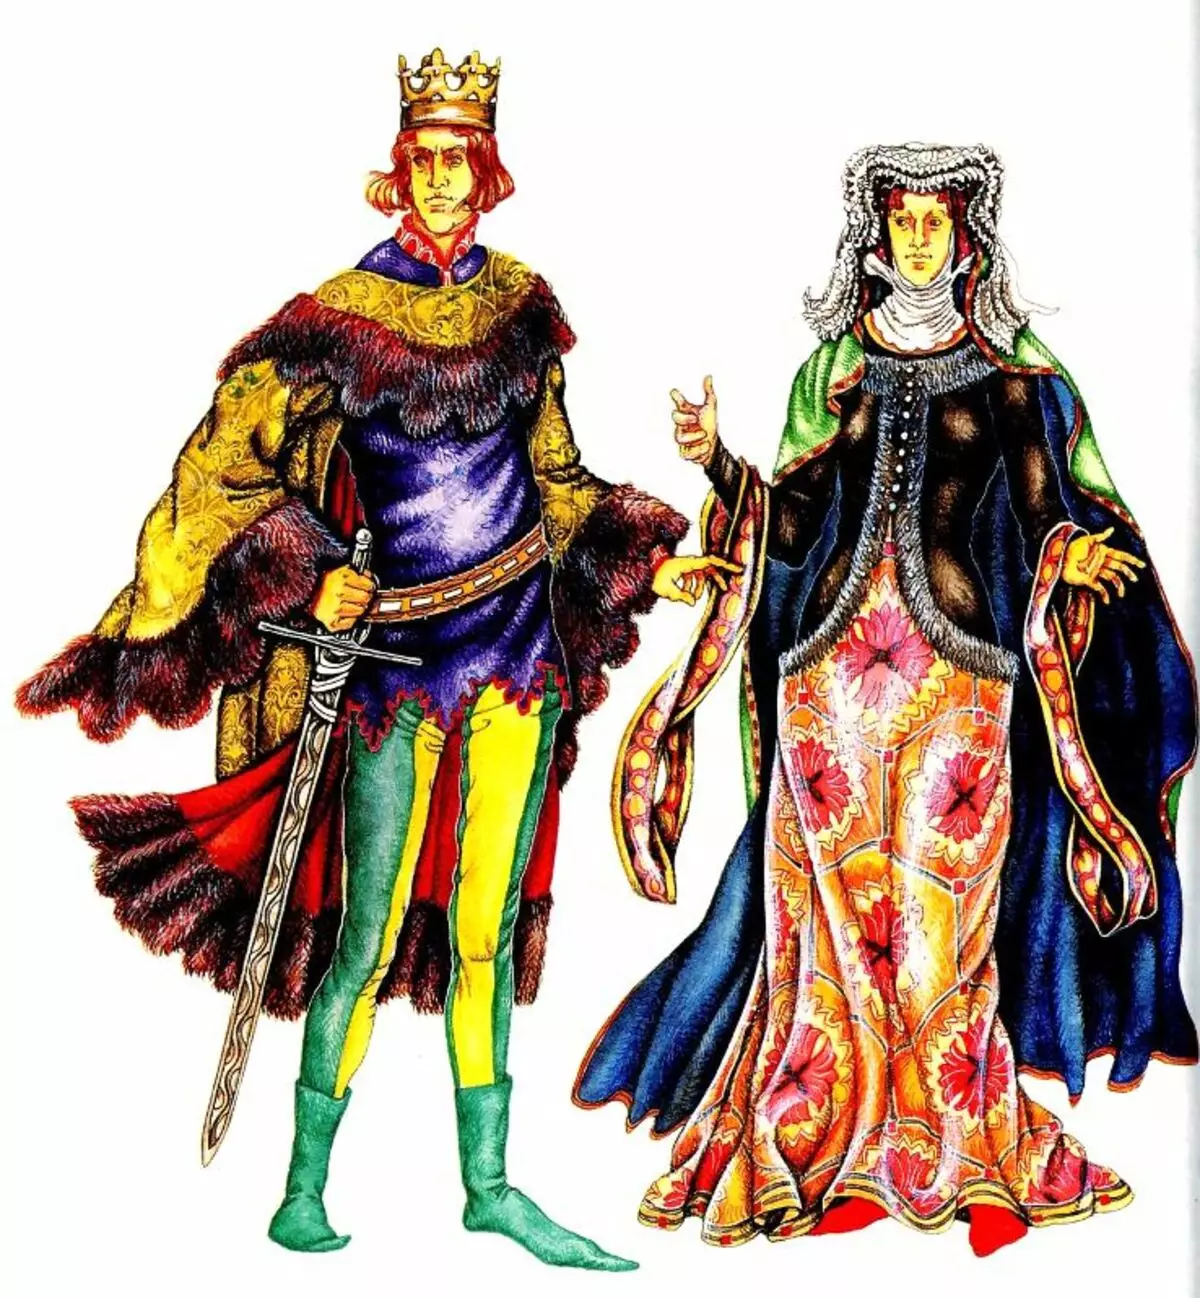 Одежда эпохи средневековья. Мода средневековья романский стиль. Мода Бургундии 15 век. Мода средневековья мужская 15 век. Бургундская мода 15 века.